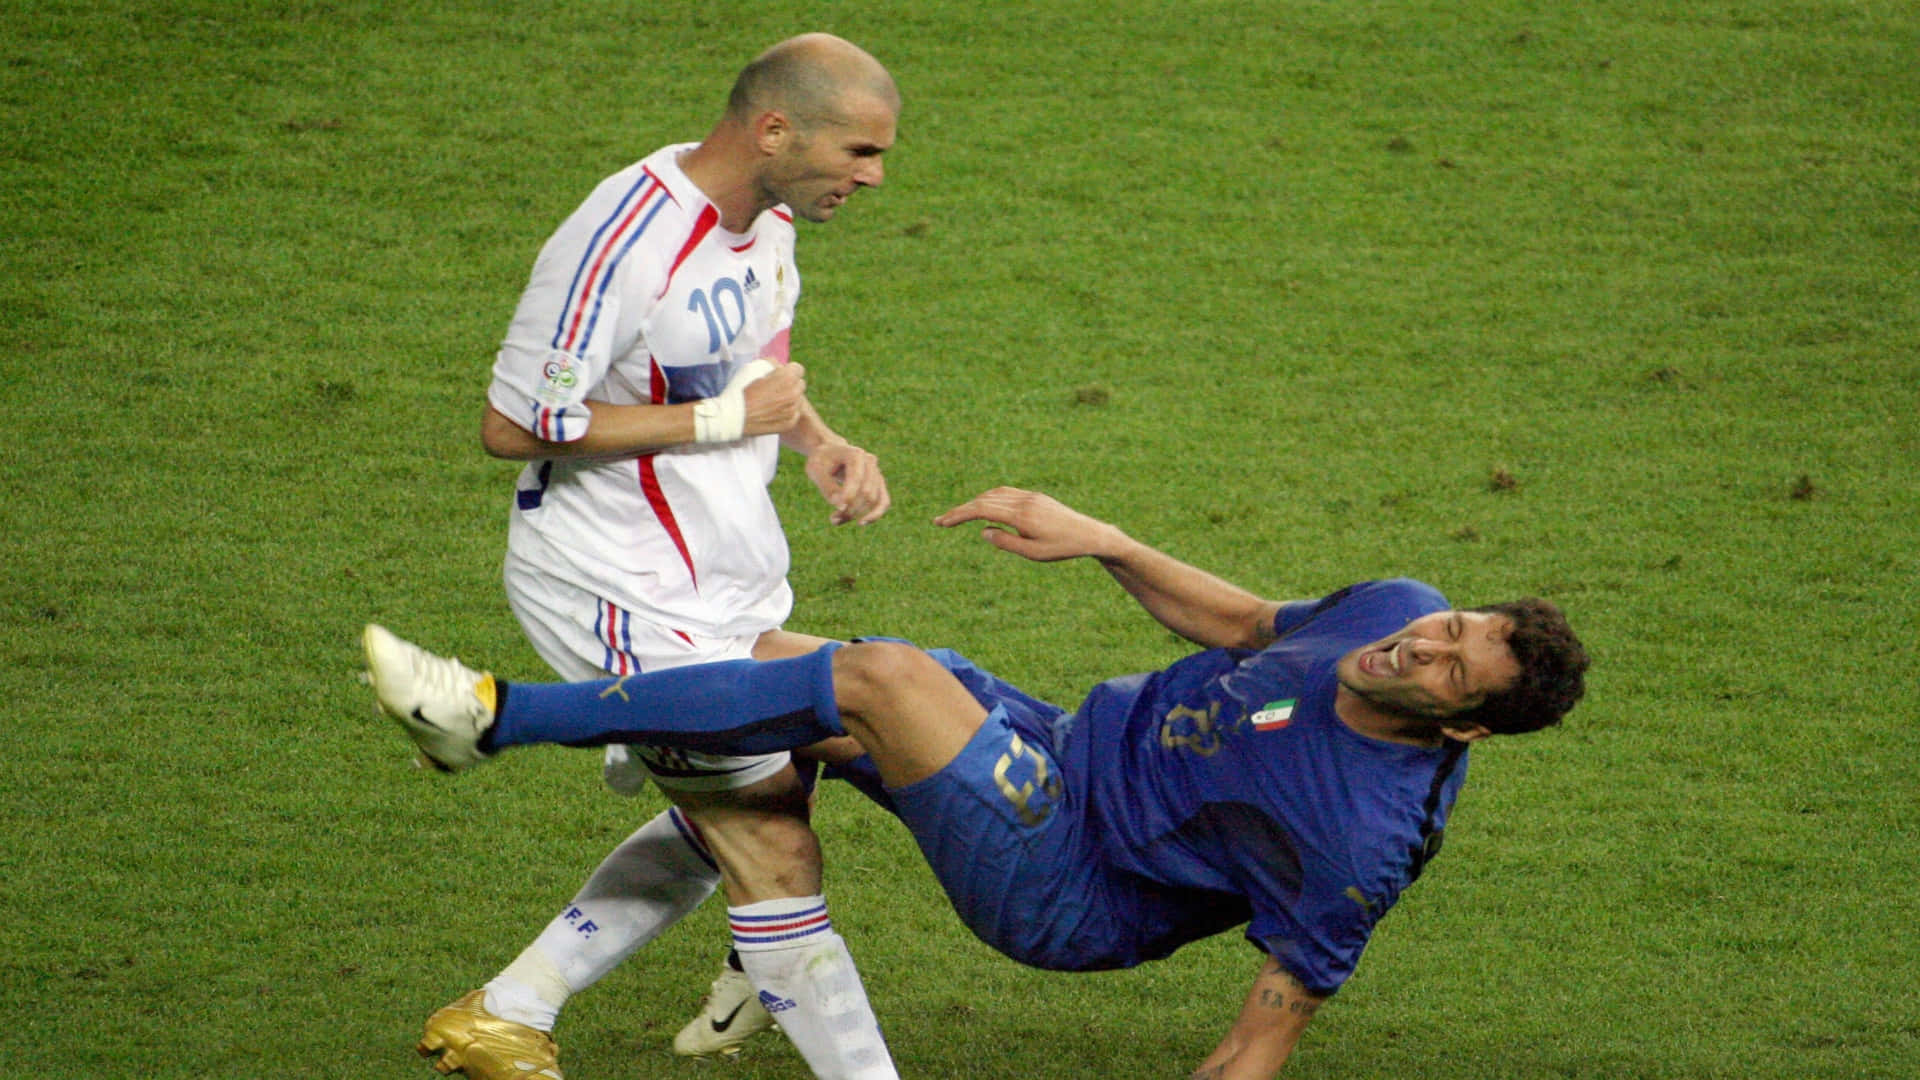 Zinedine Zidane Marco Materazzi Football Photography Wallpaper